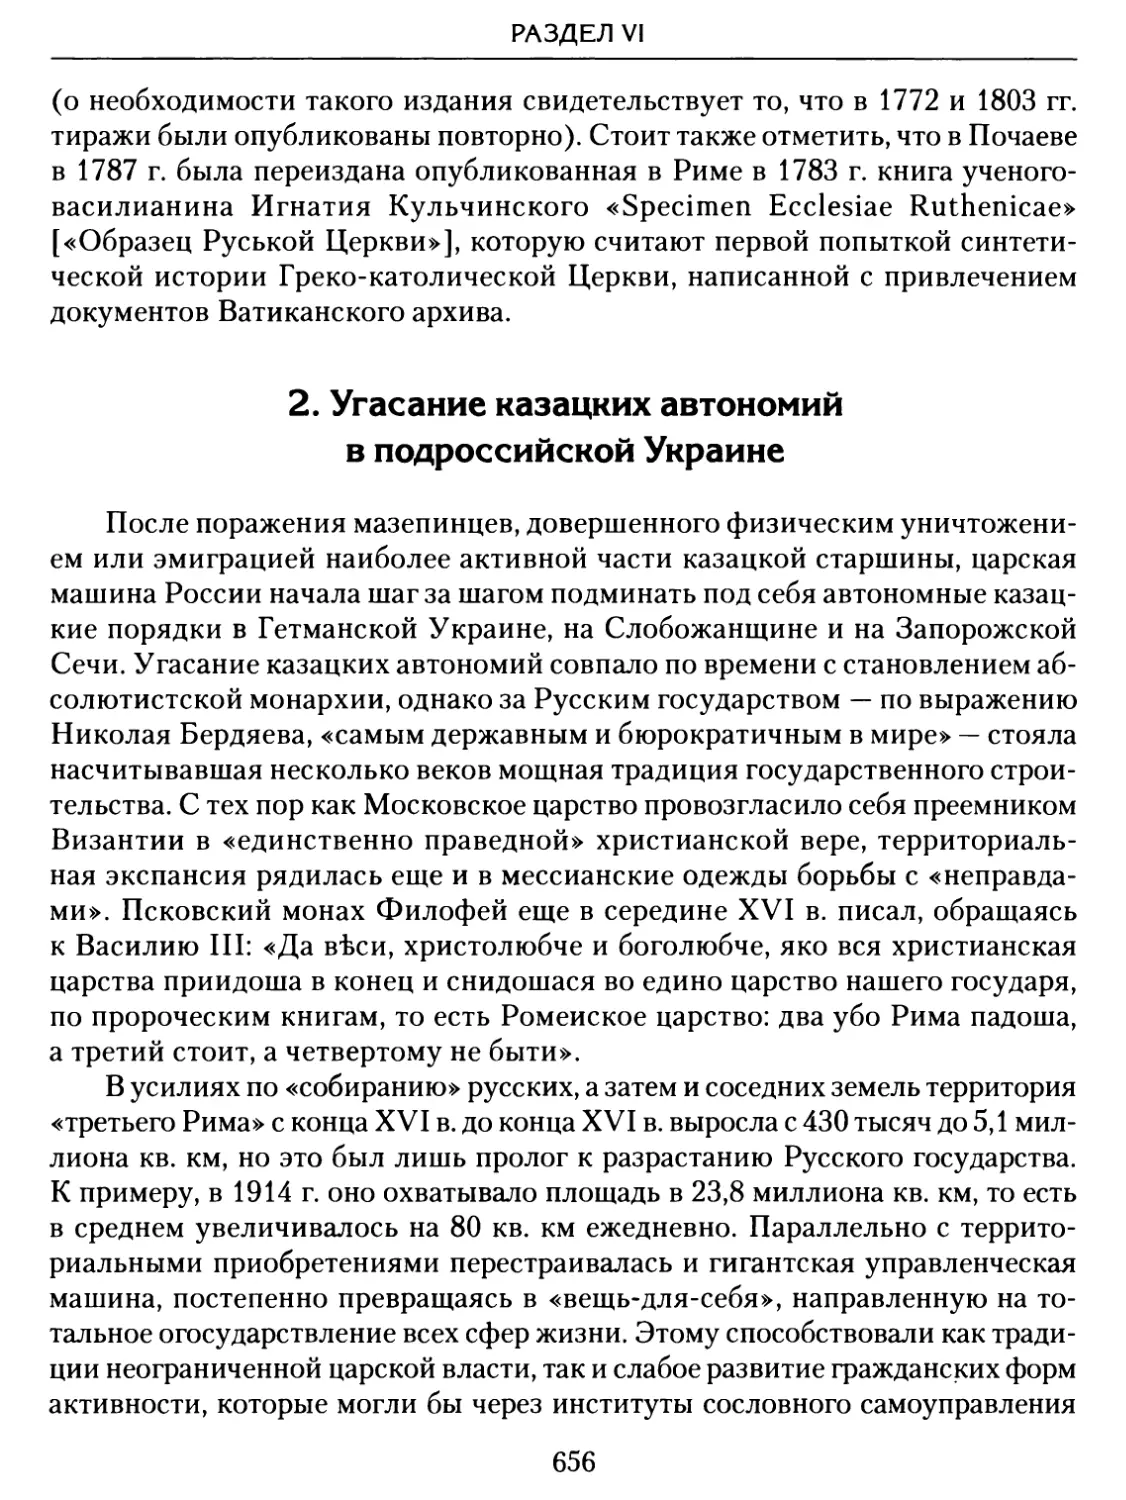 2. Угасание казацких автономий в подроссийской Украине